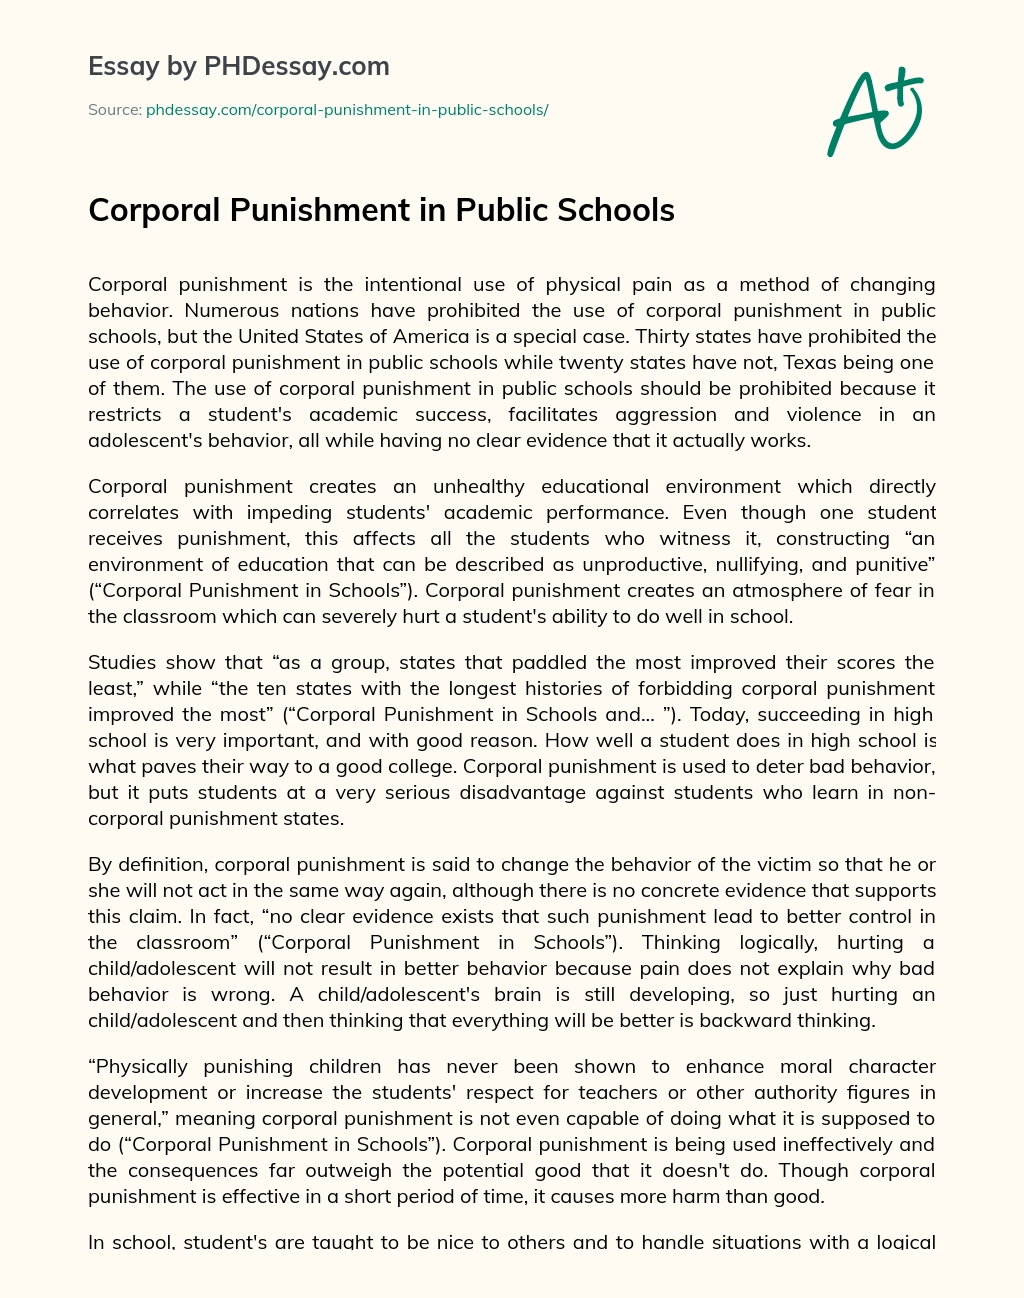 Corporal Punishment in Public Schools essay